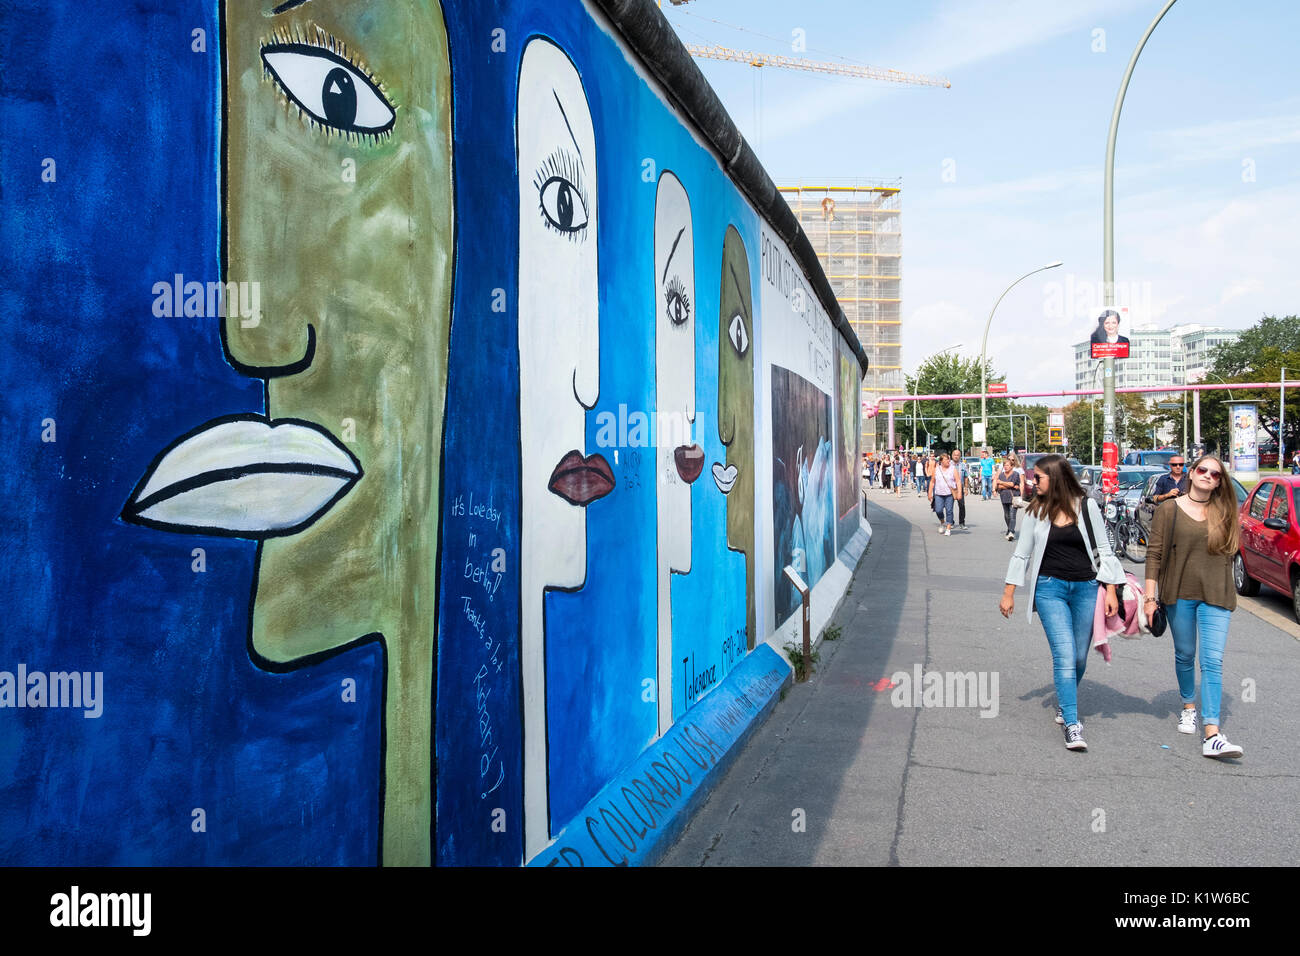 Wandbild auf ursprüngliche Abschnitt der Berliner Mauer an der East Side Gallery in Berlin gemalt, Deutschland Stockfoto